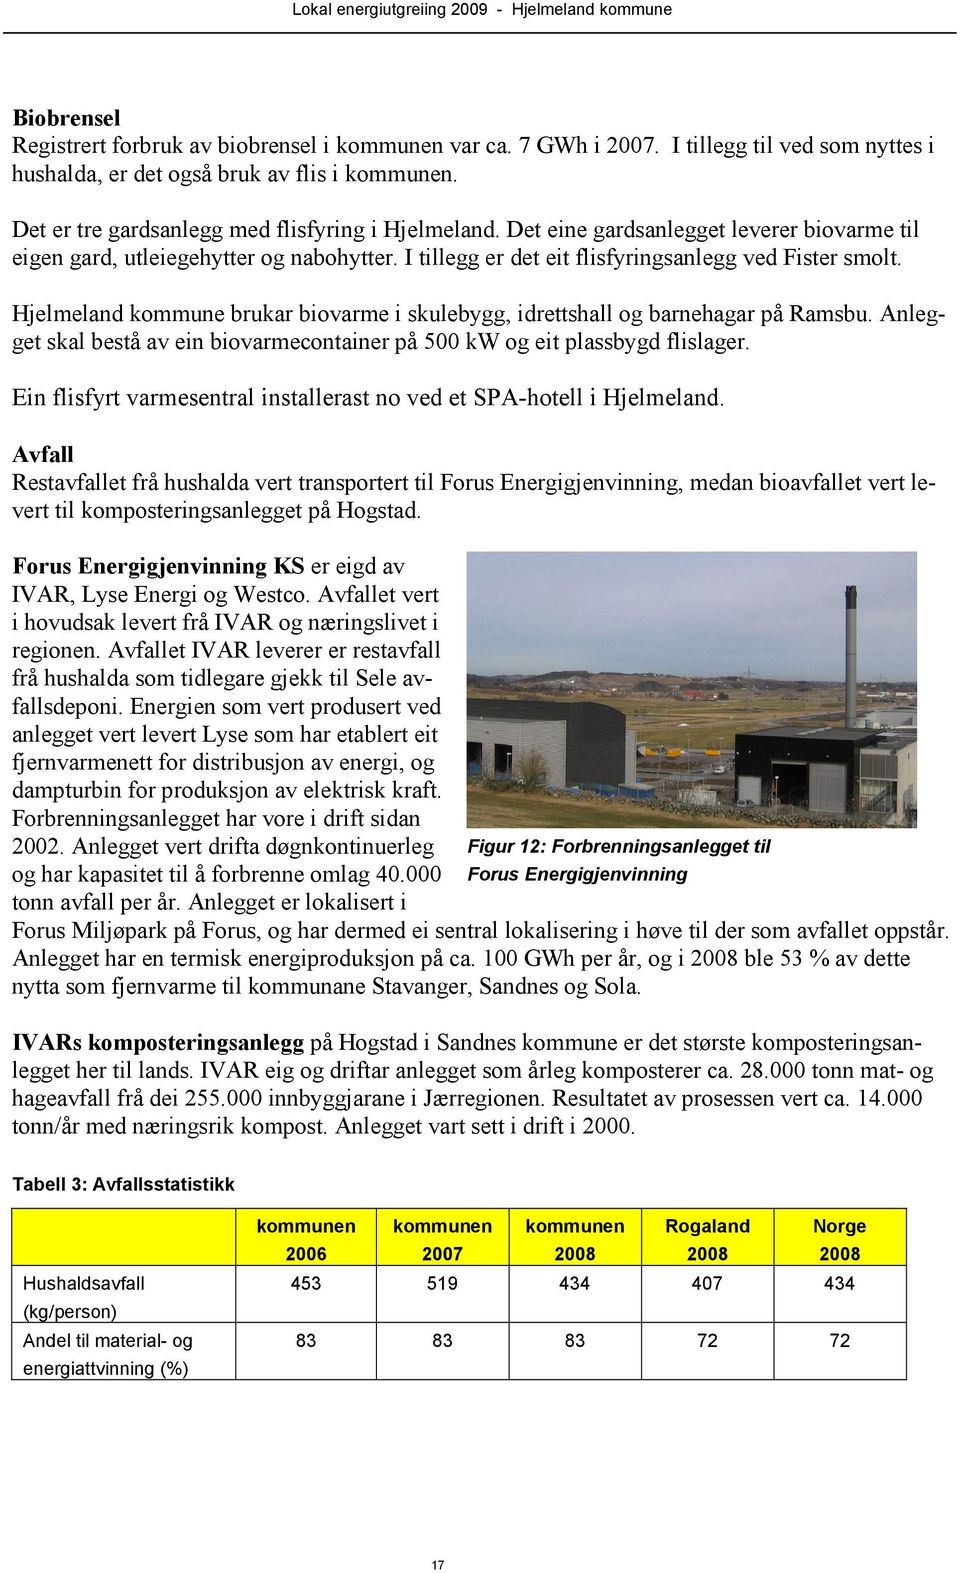 Hjelmeland kommune brukar biovarme i skulebygg, idrettshall og barnehagar på Ramsbu. Anlegget skal bestå av ein biovarmecontainer på 500 kw og eit plassbygd flislager.